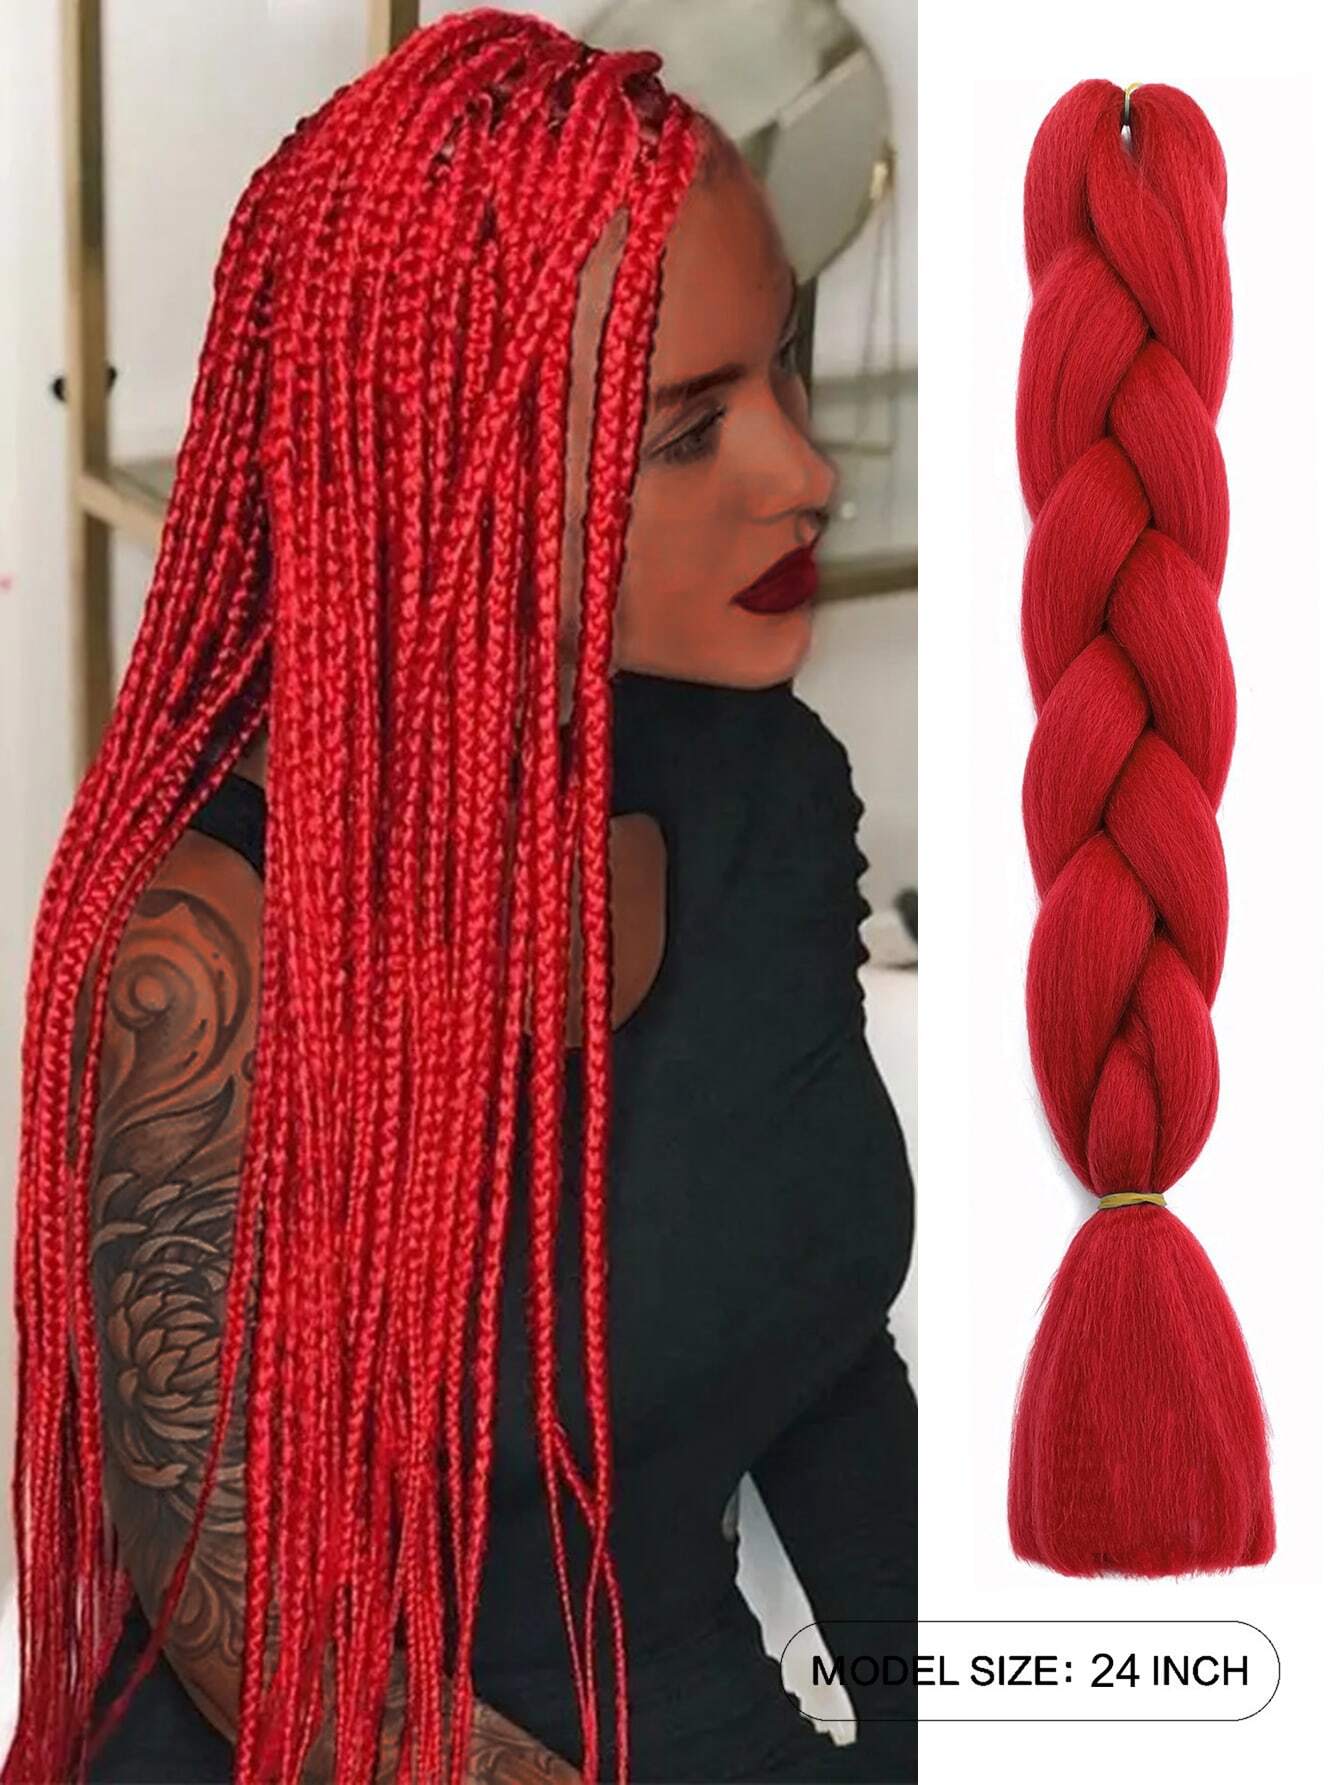 6000 a11-02 Una pieza Cabello sintético trenzado gigante rojo Extensiones de cabello trenzado de 24 pulgadas Caja de trenzas Cabello trenzado Cabello sintético para trenzar (más de cuarenta colores)